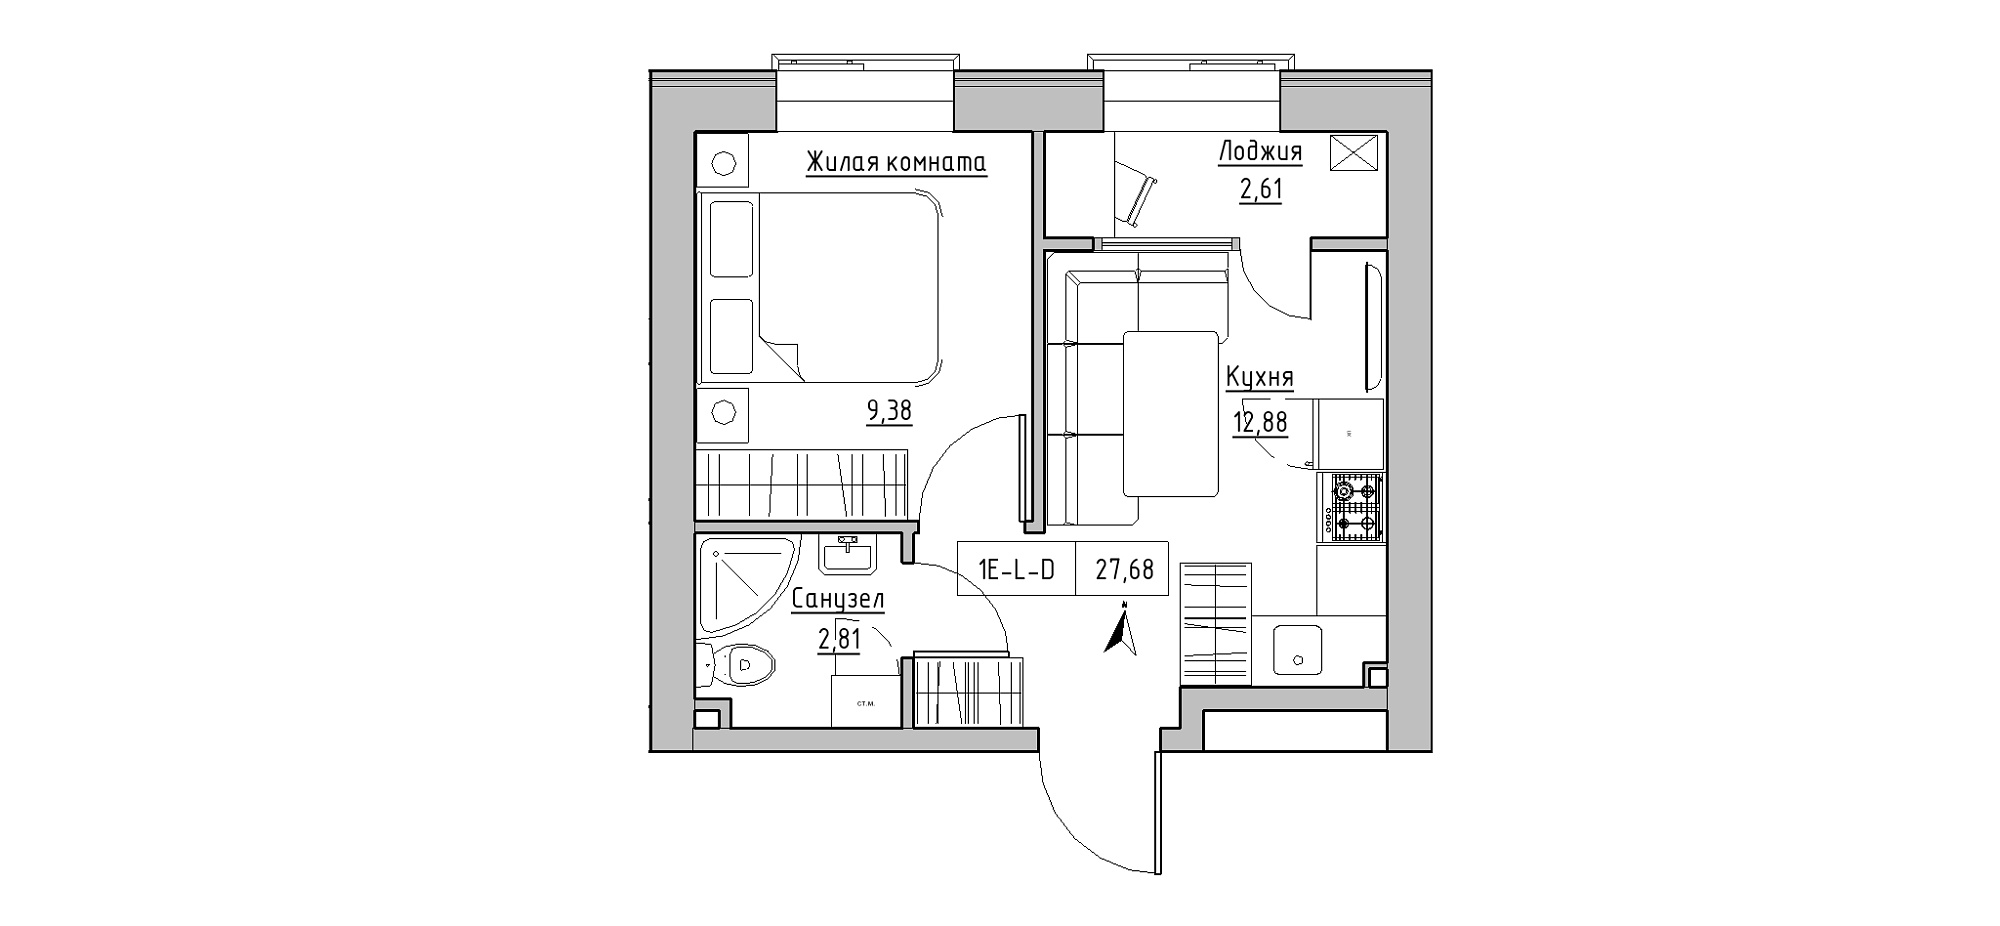 Планування 1-к квартира площею 27.68м2, KS-020-02/0001.